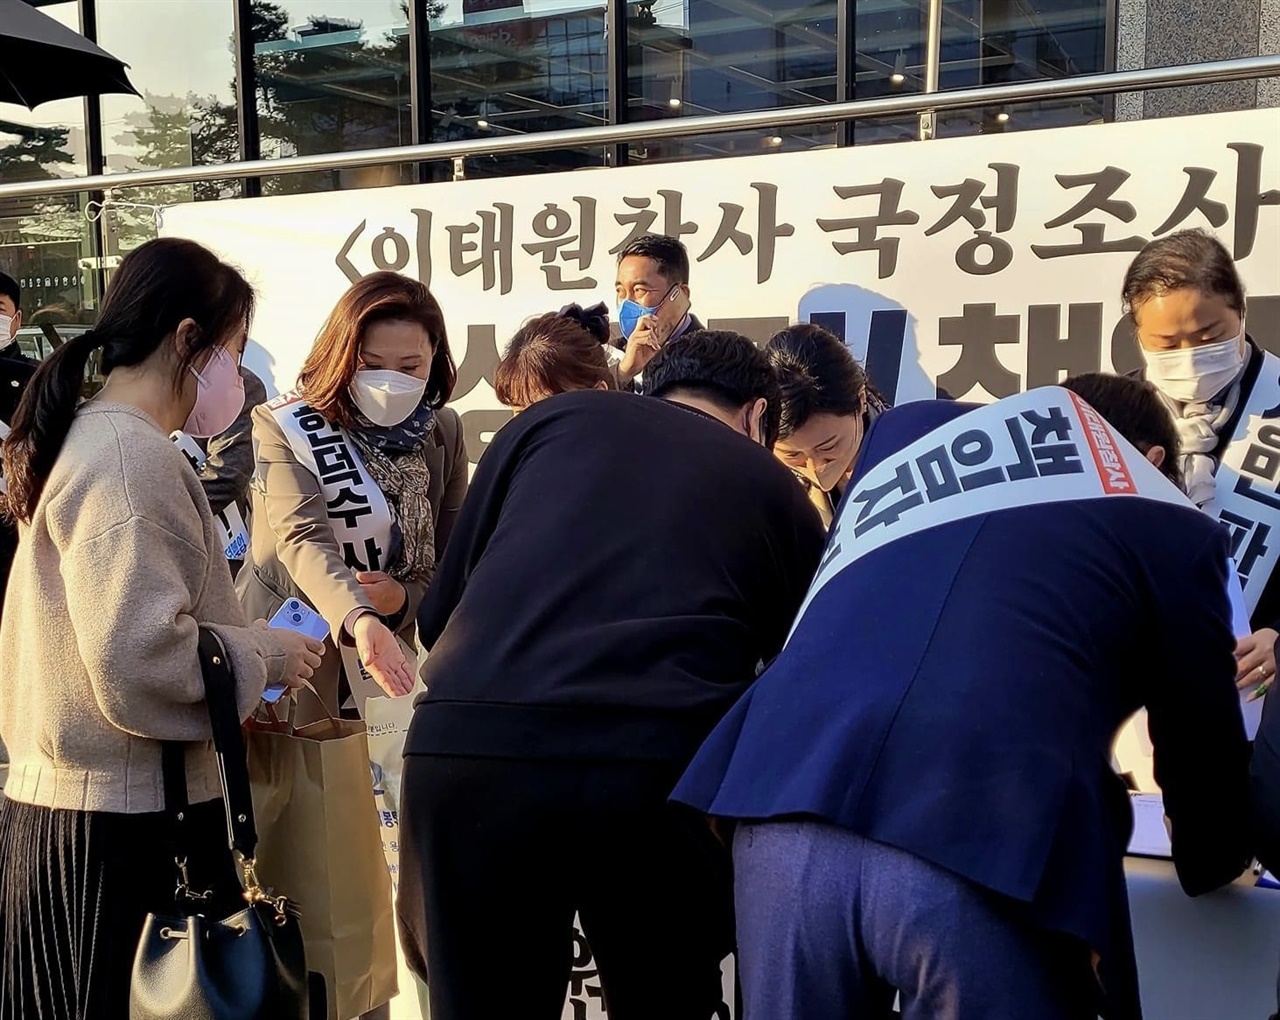 민주당 홍성예산지역위는 지난 18일, 내포신도시에서 지역 서명운동본부 발대식을 열고 진상규명 촉구 서명운동에 나섰으며, 21일도 두 번째 서명운동에 나섰다.